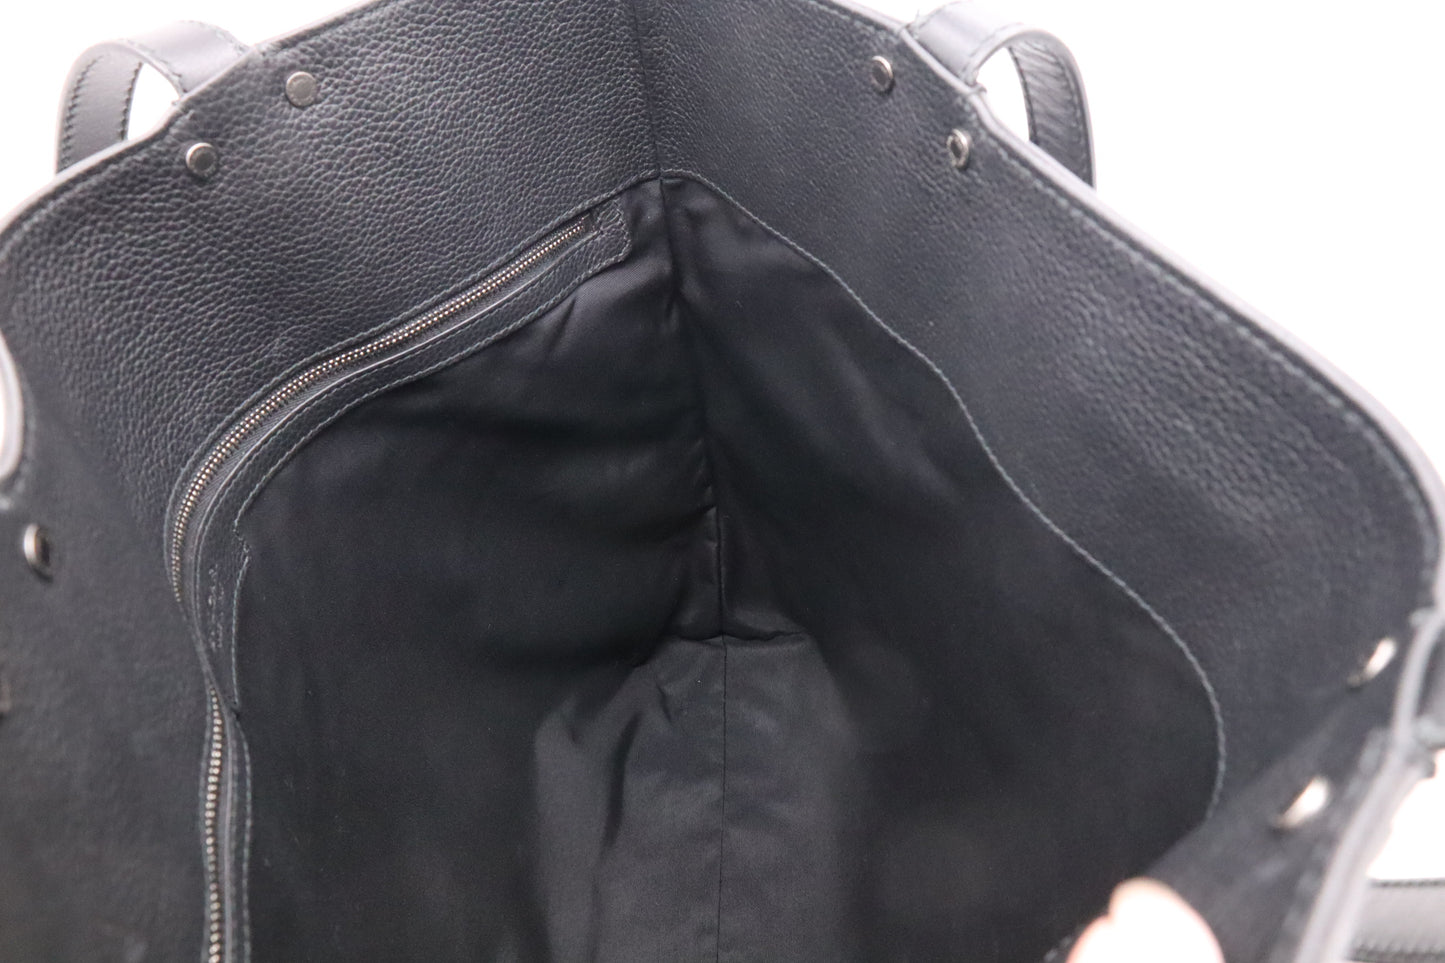 Bvlgari Tote Bag in Black Leather